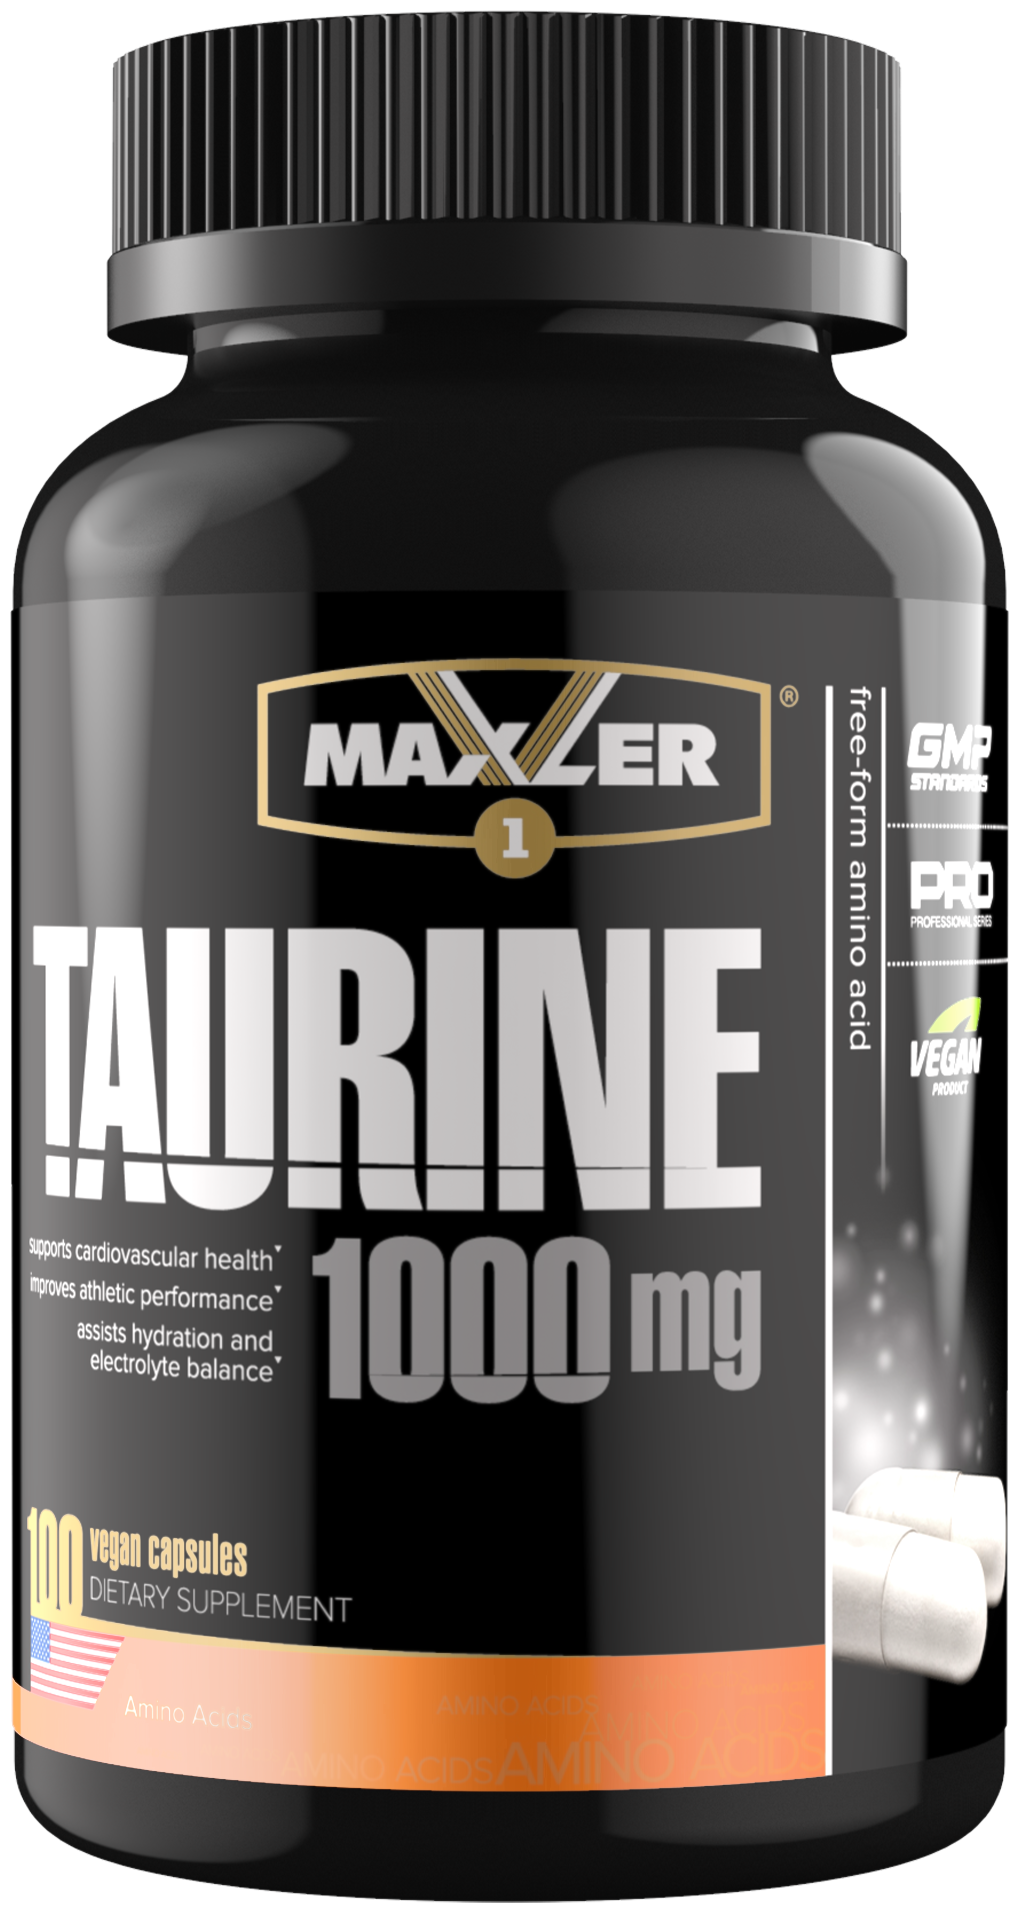 Аминокислота Maxler Taurine 1000 mg ( Таурин 1000 мг ) USA 100 вегетарианских капсул